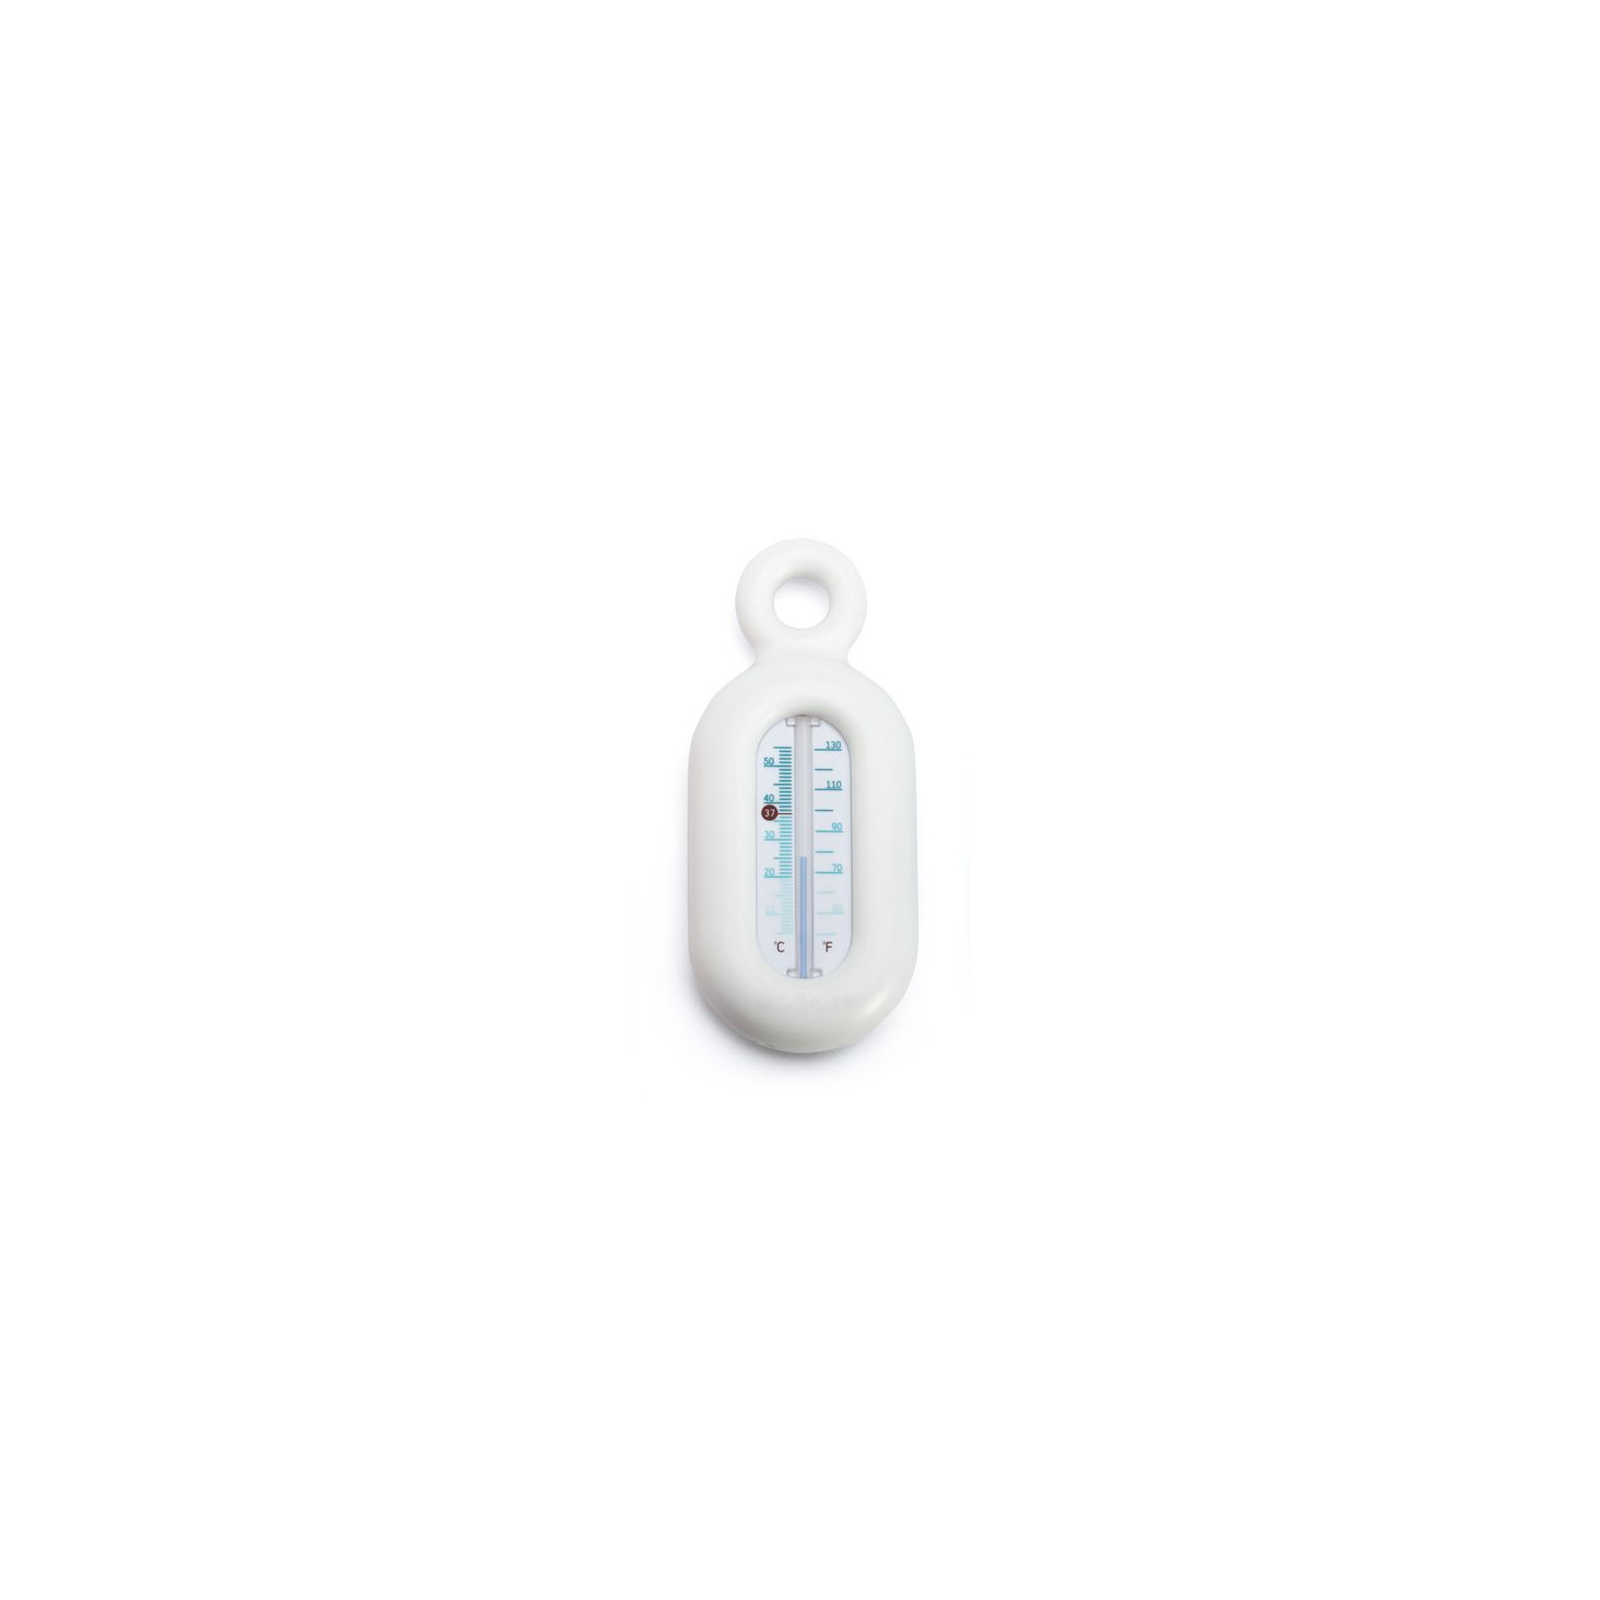 Термометр для воды Suavinex белый (400695/7)